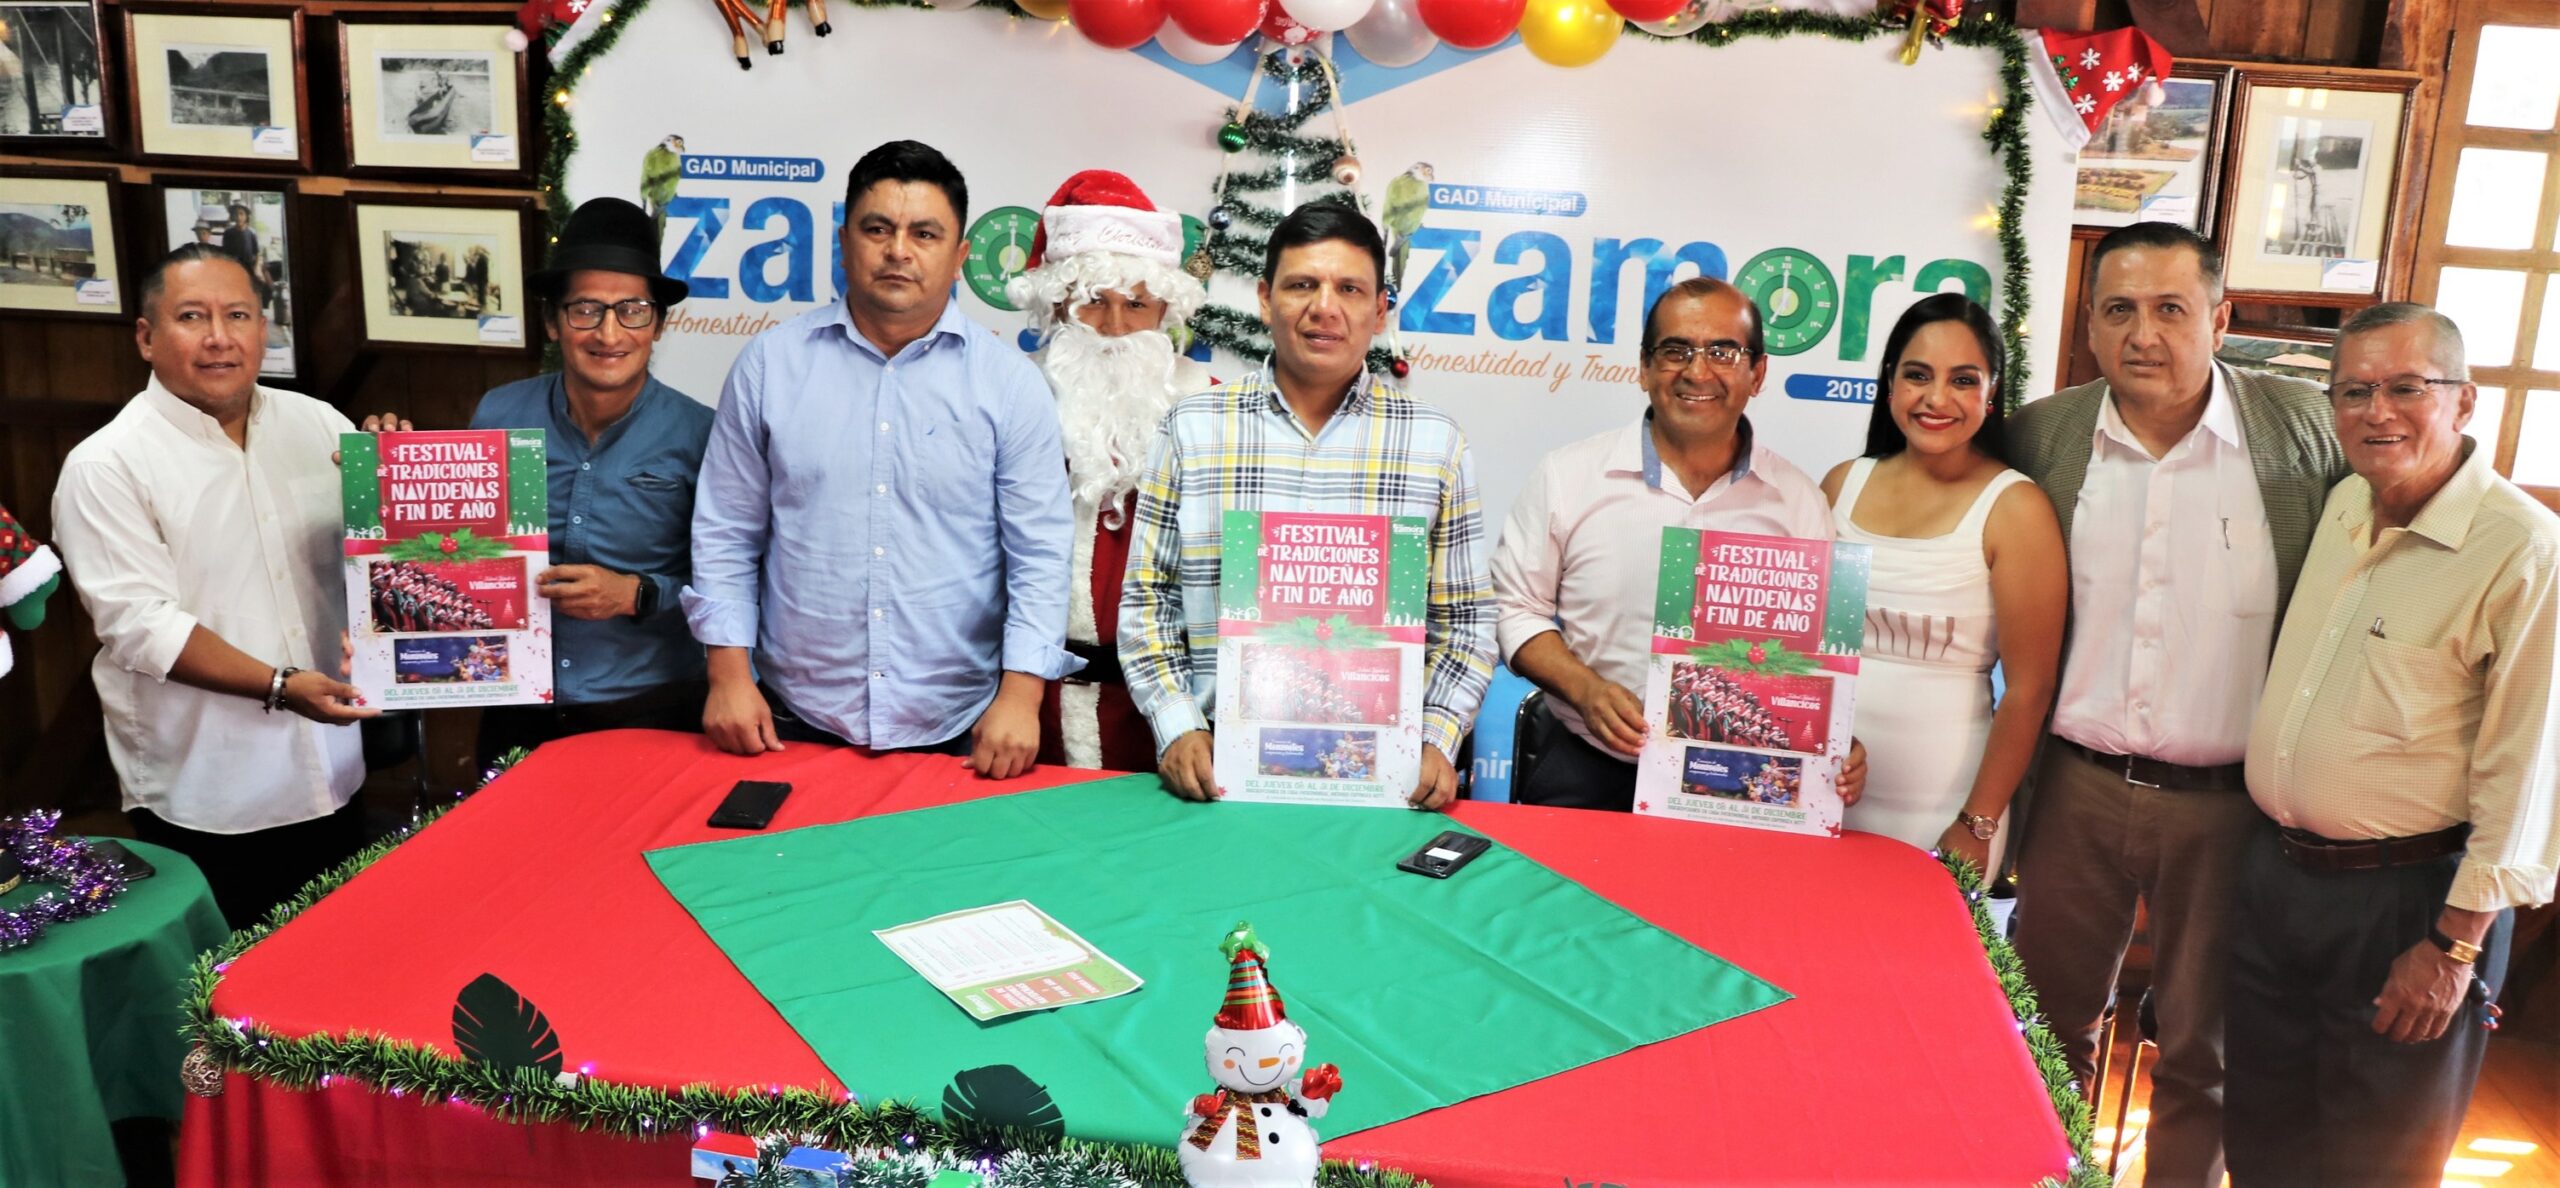 Lee más sobre el artículo GAD Zamora lanzó festival de tradiciones navideñas y fin de año